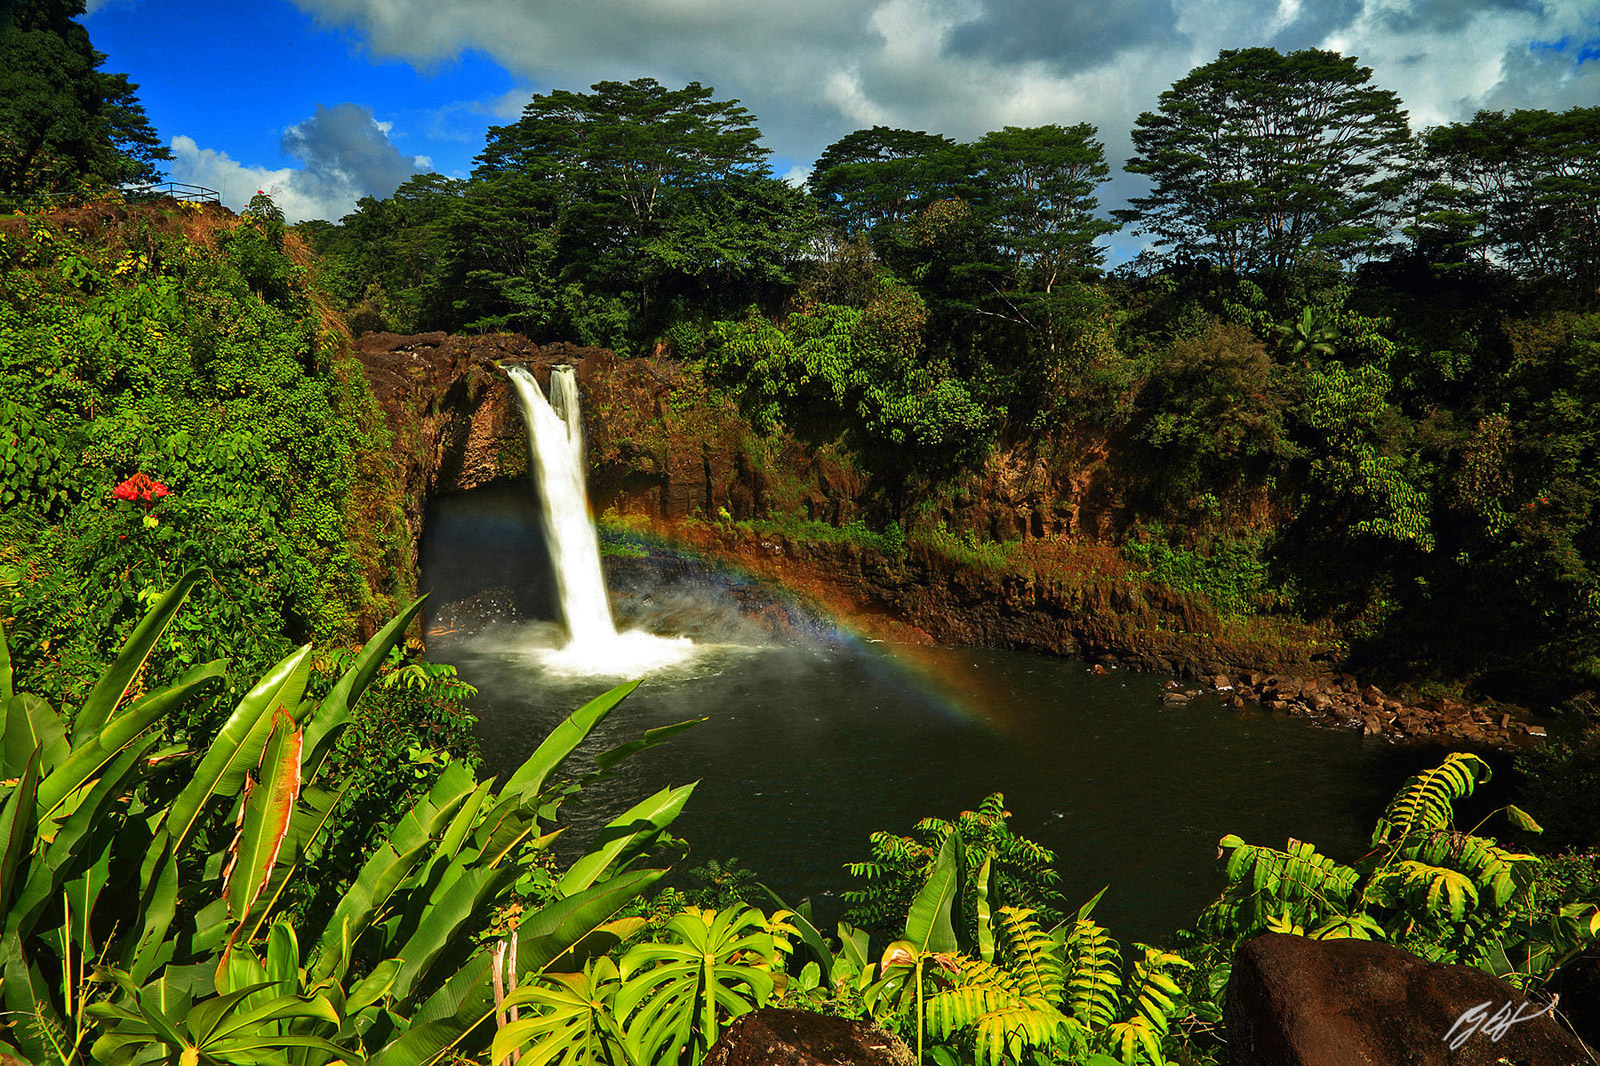 Rainbow in Rainbow Falls on the Big Island of Hawaii